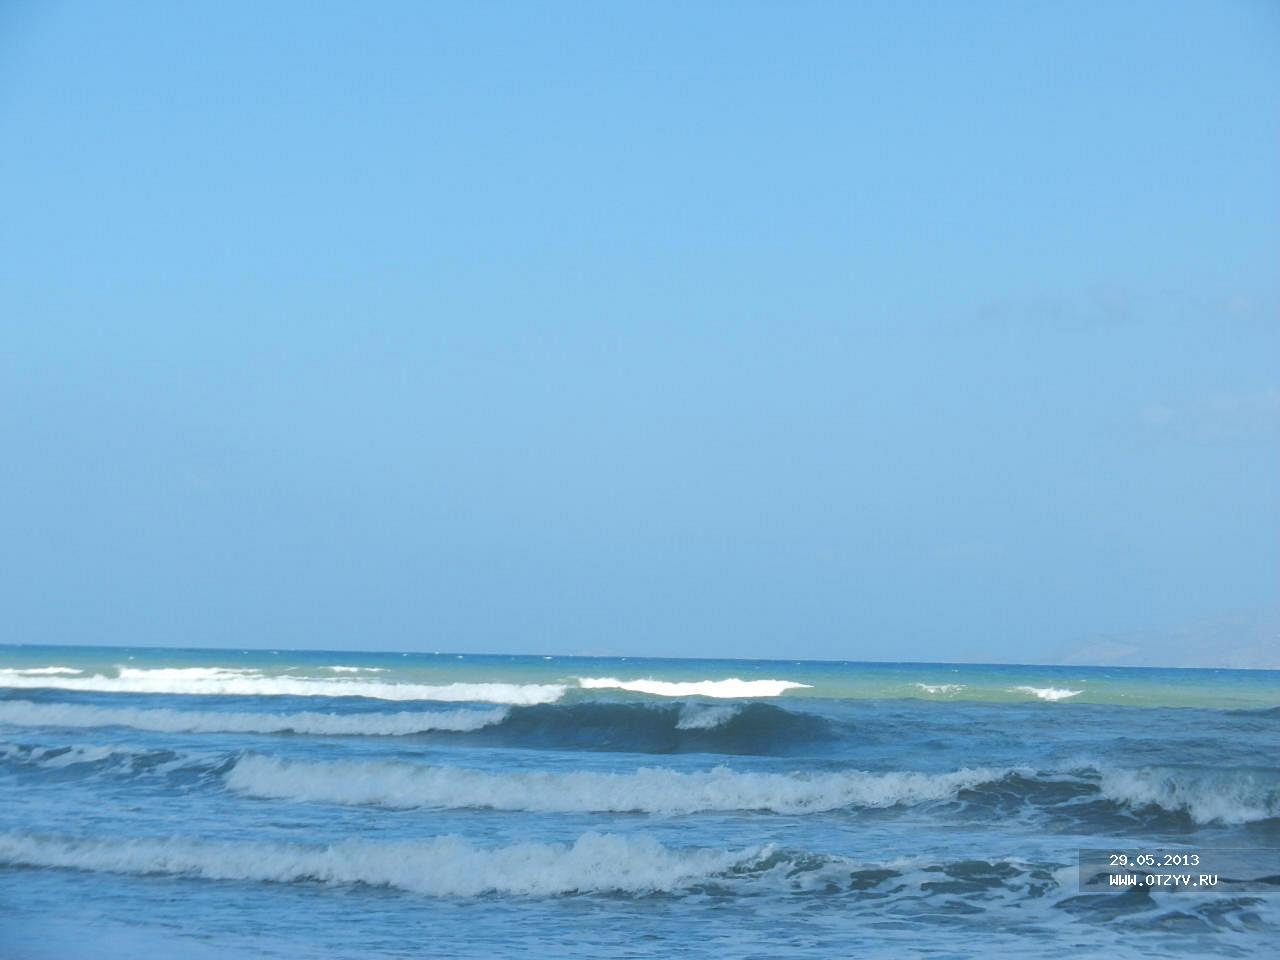 Atlantica Marmari Beach